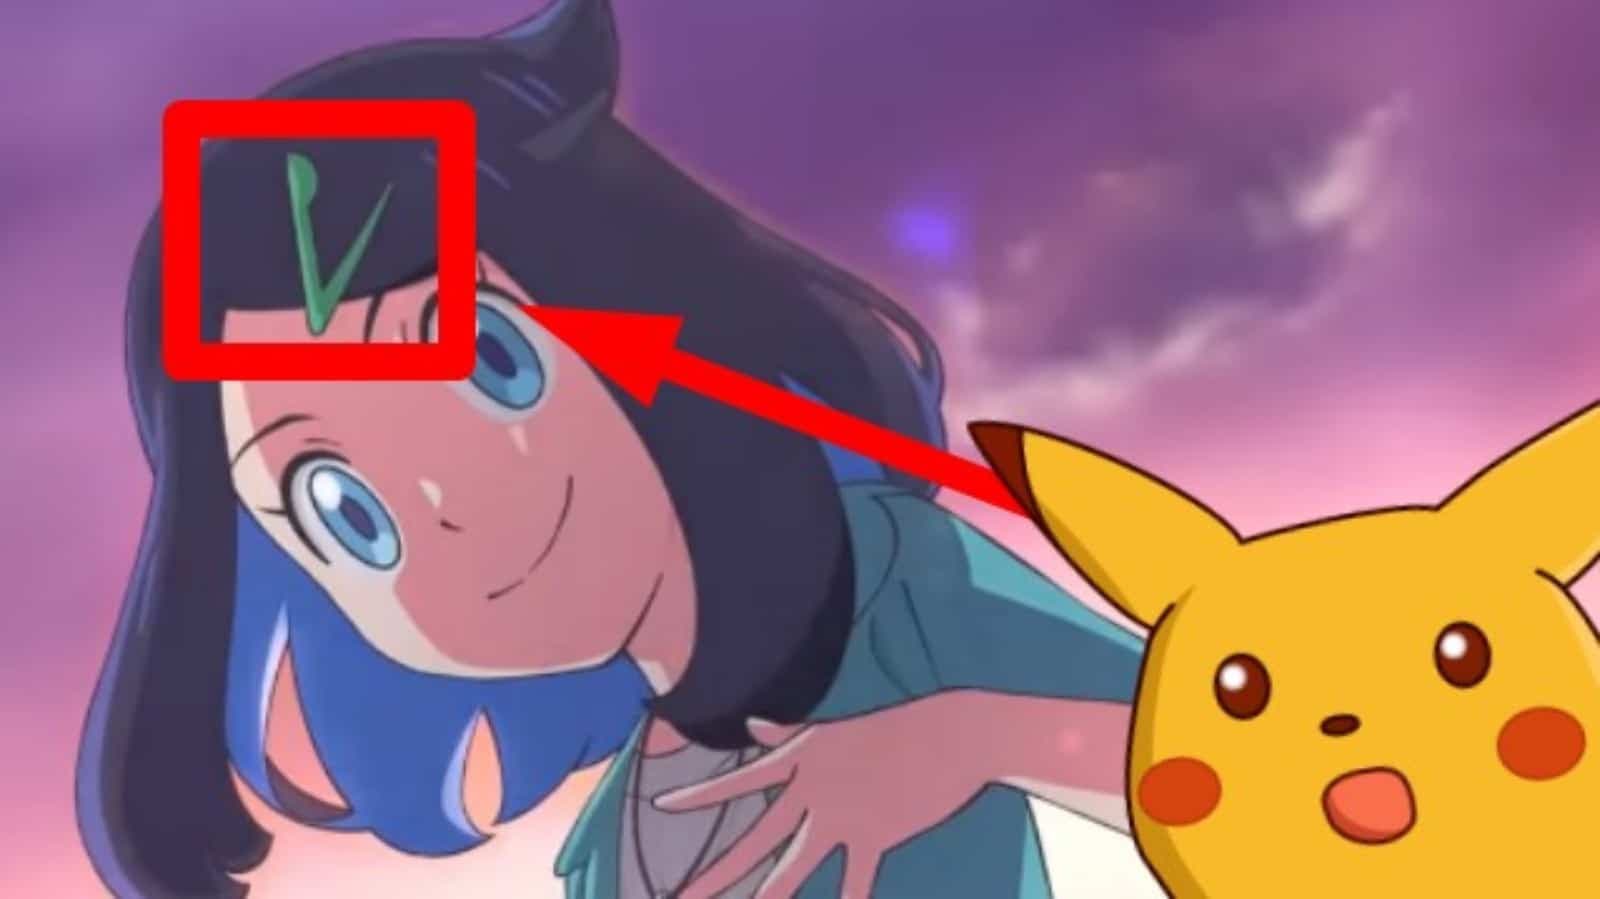 Descubierta la relación de la protagonista del anime de Pokémon con una criatura inesperada